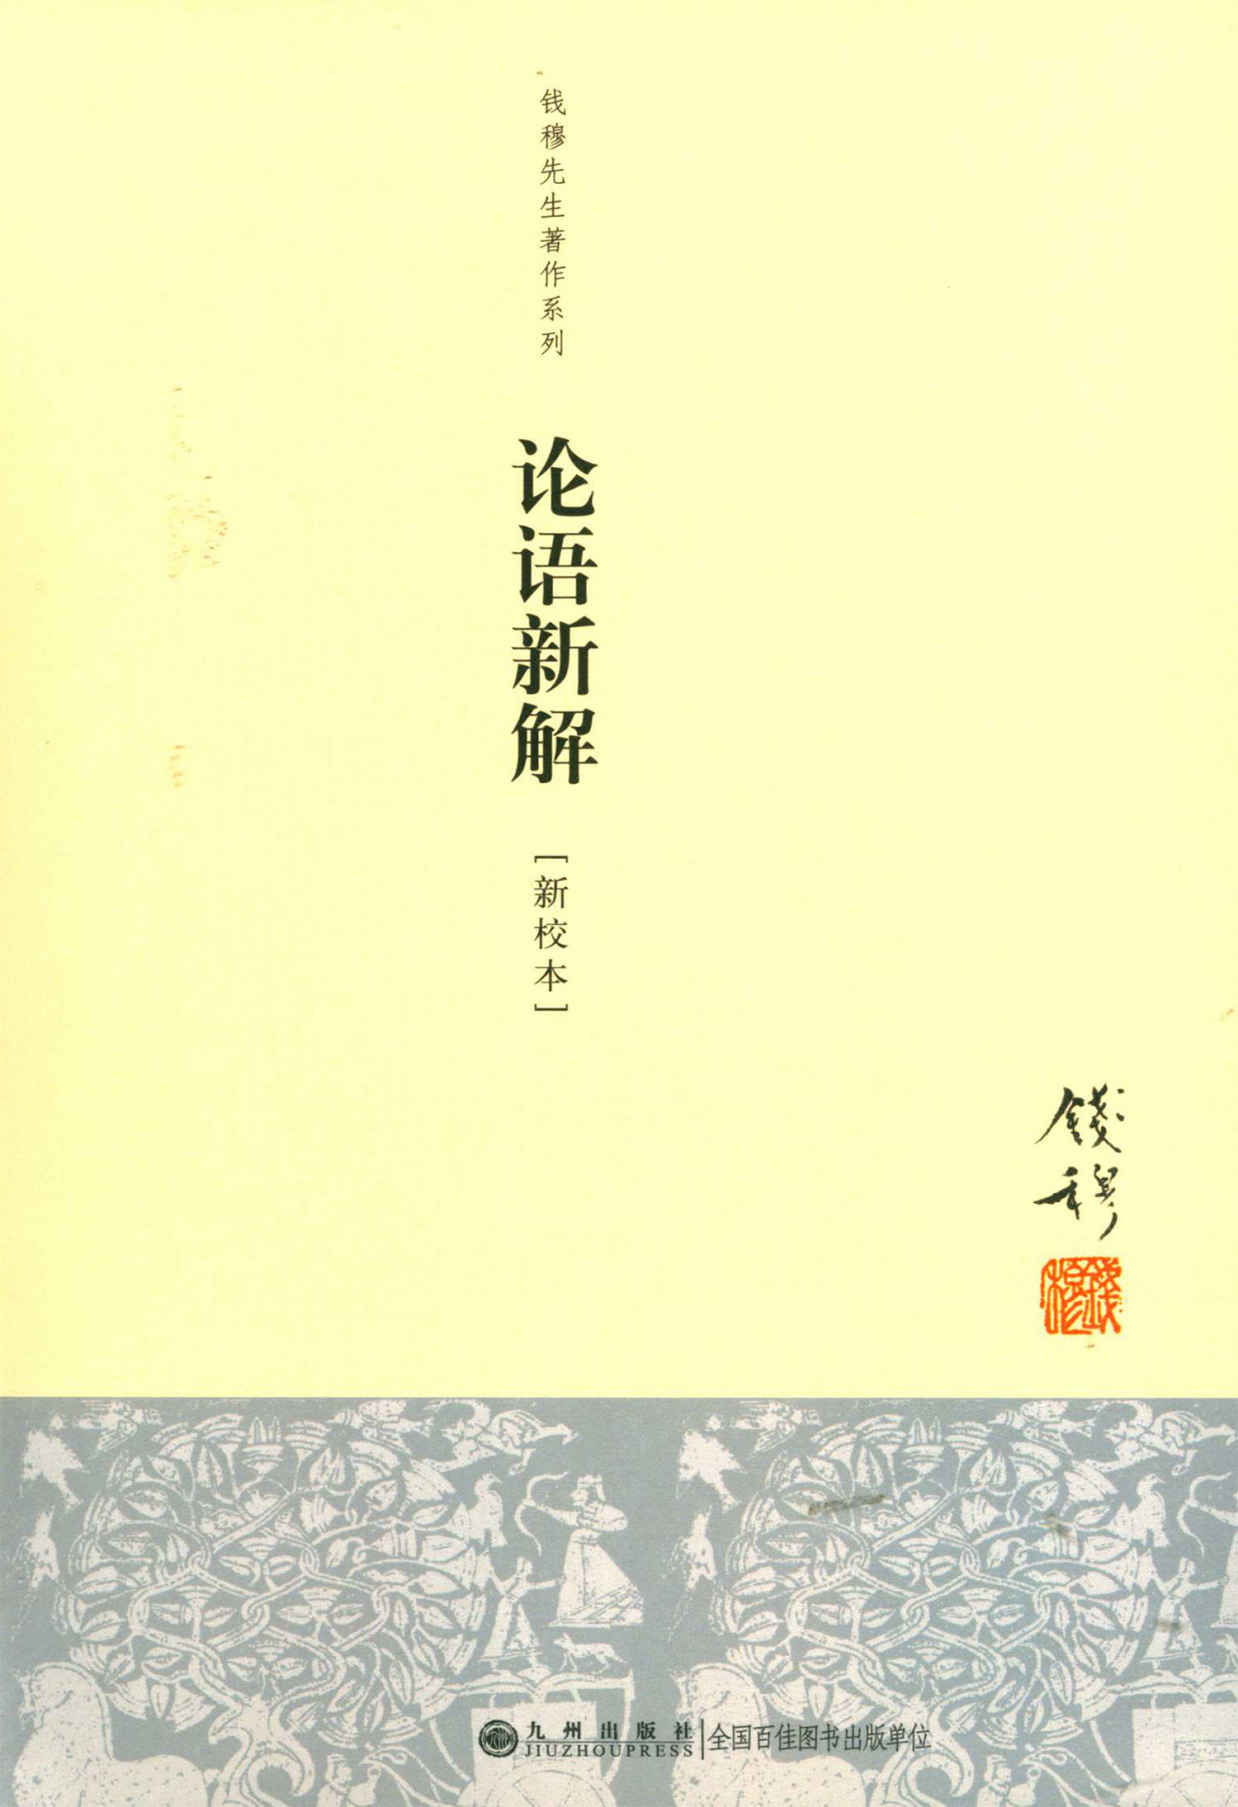 论语新解 (钱穆先生全集) (Traditional_chinese Edition)